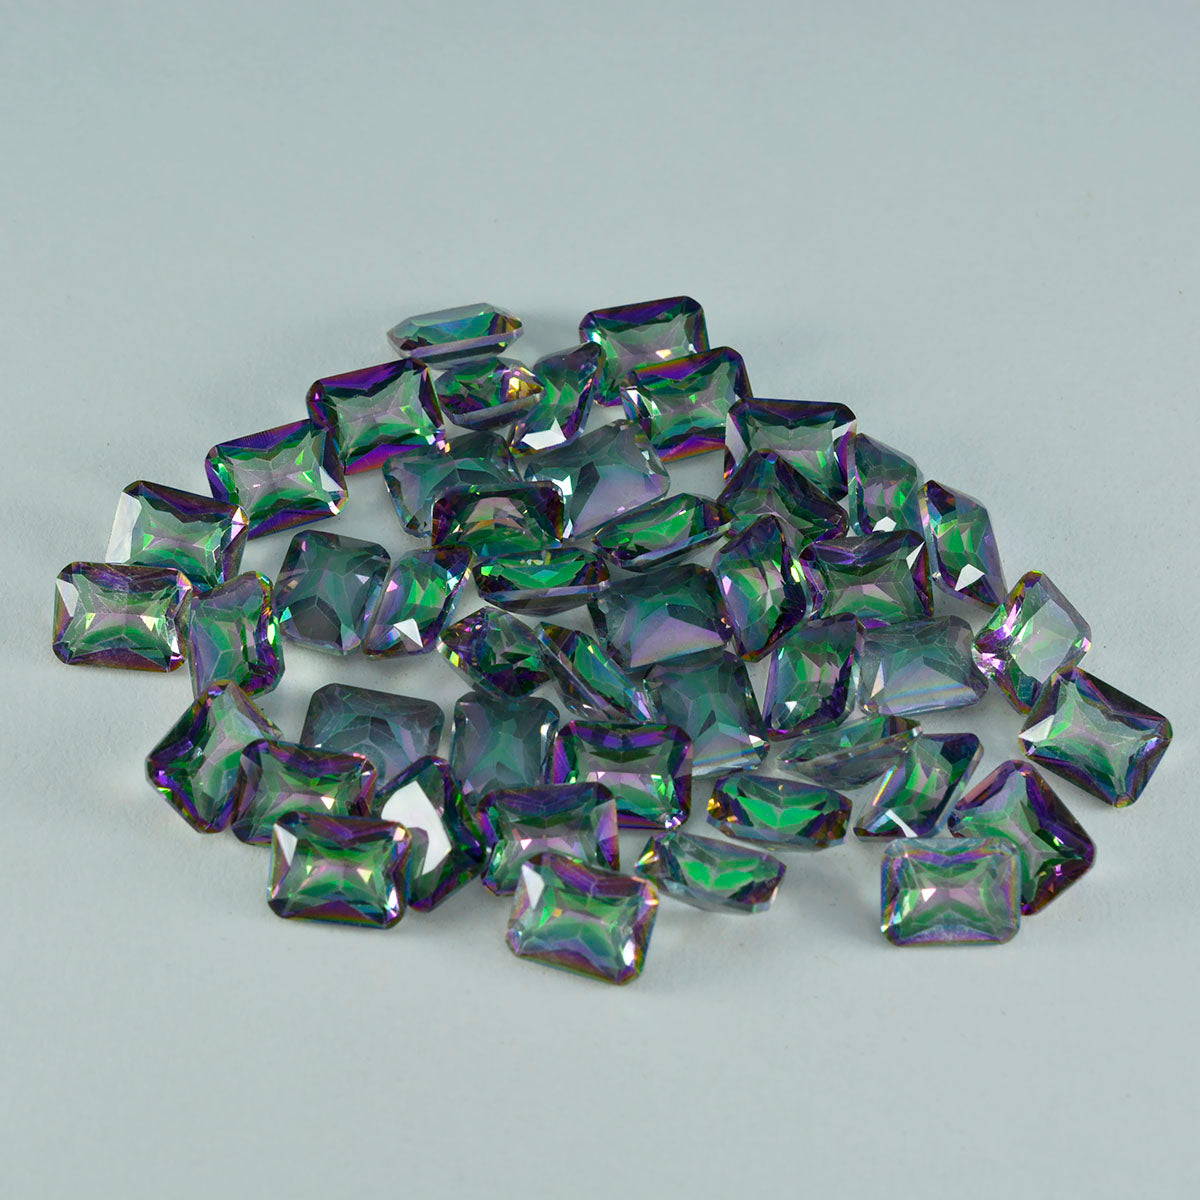 Riyogems 1PC Multi Color Mystic Quartz Faceted 4x6 mm Octagon Shape excellent Quality Gems